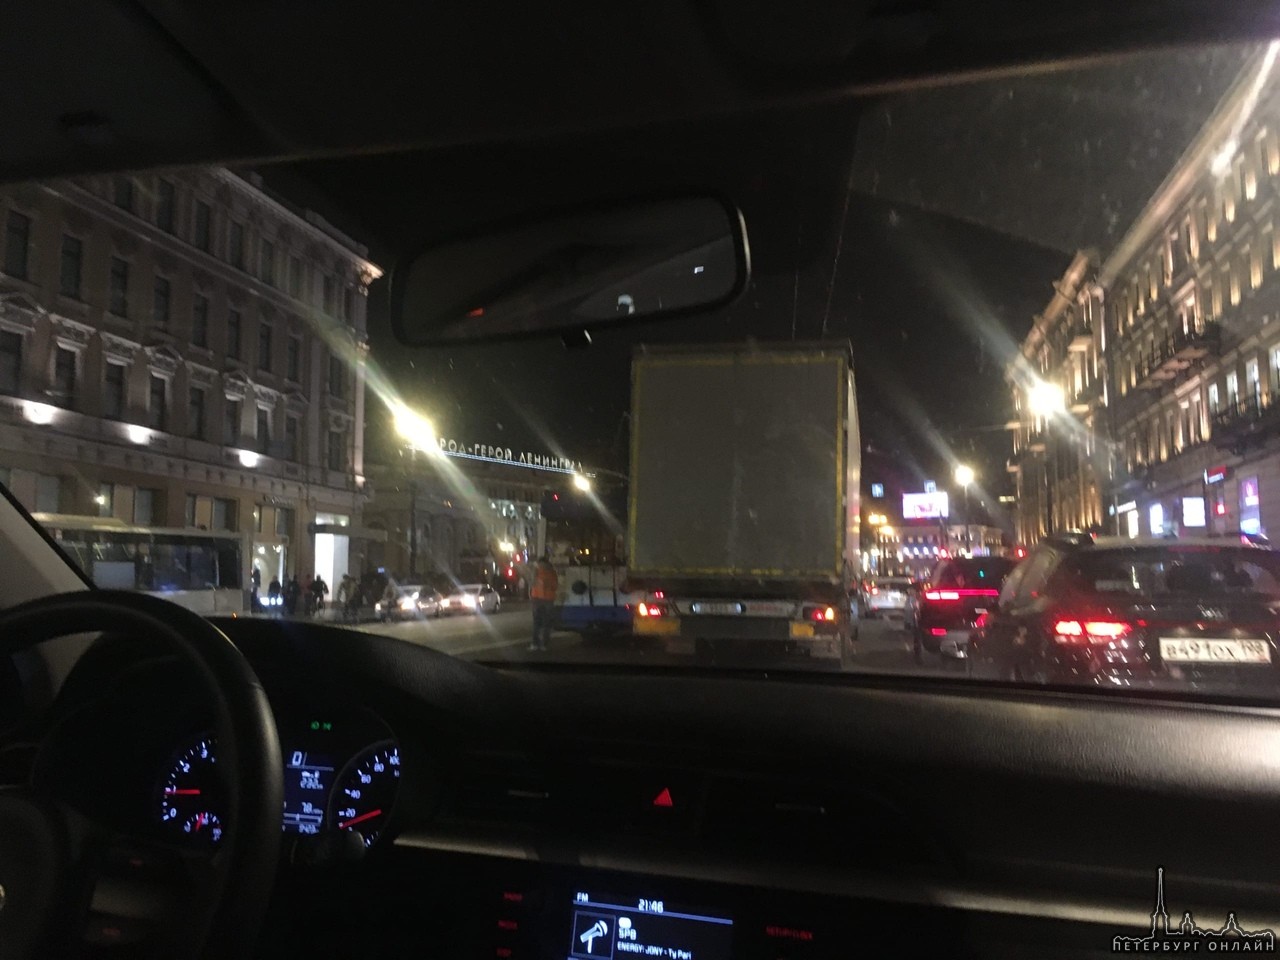 ДТП рядом со Стокманом на Невском проспекте,Фура vs Троль ,стоят скучают служб нет